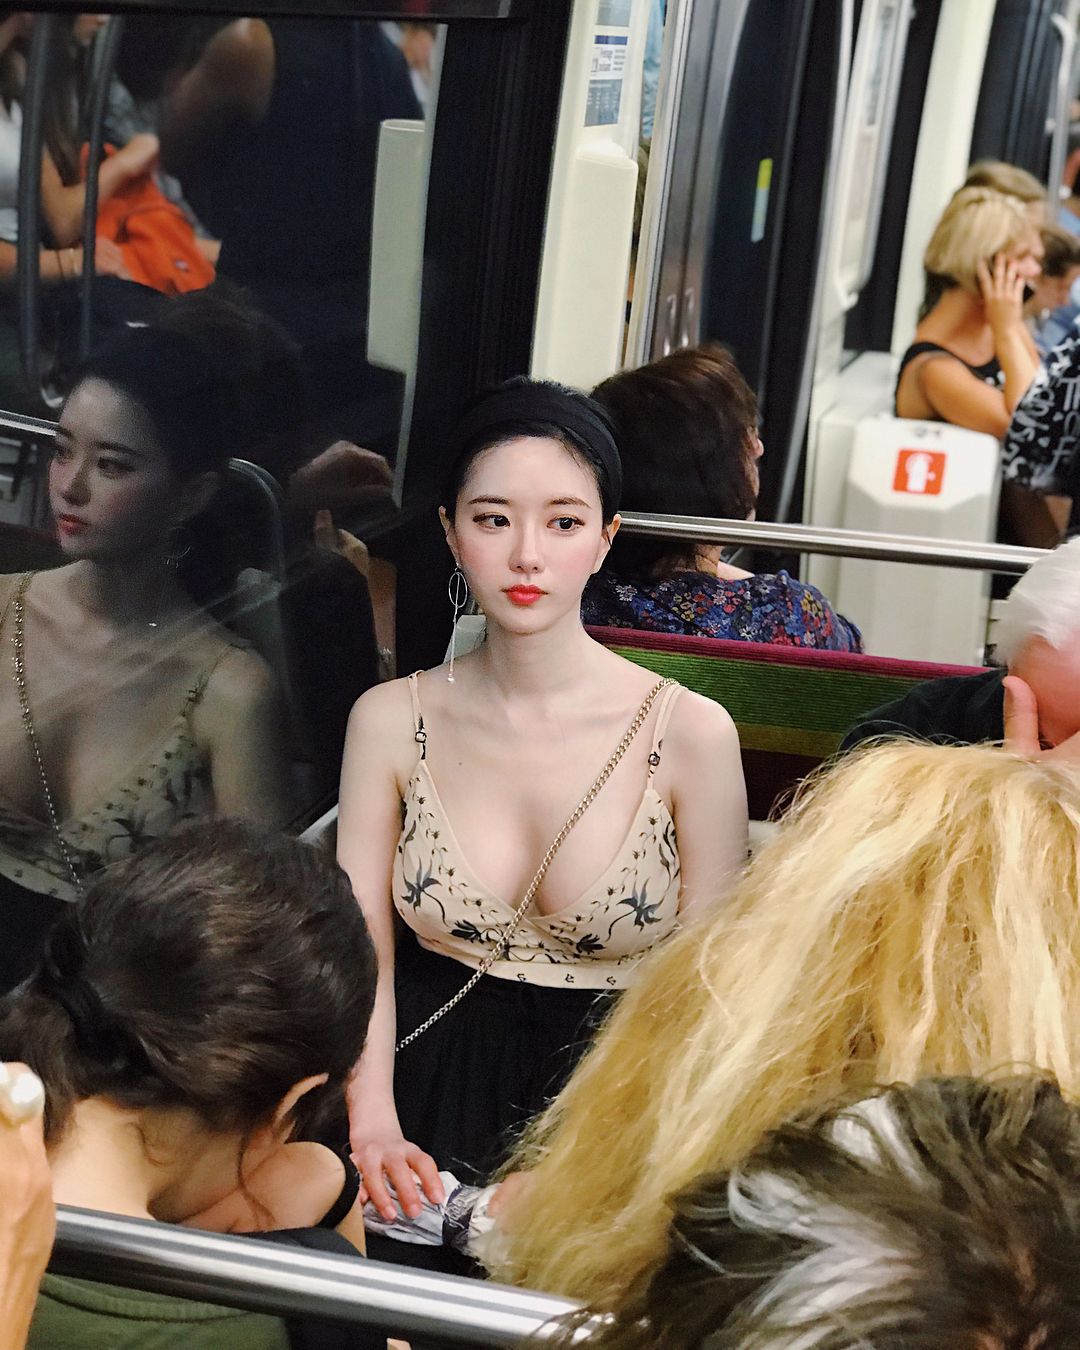 Nguyên tắc thời trang giúp thiếu nữ xứ Hàn khéo hút ánh nhìn nơi công cộng - 3